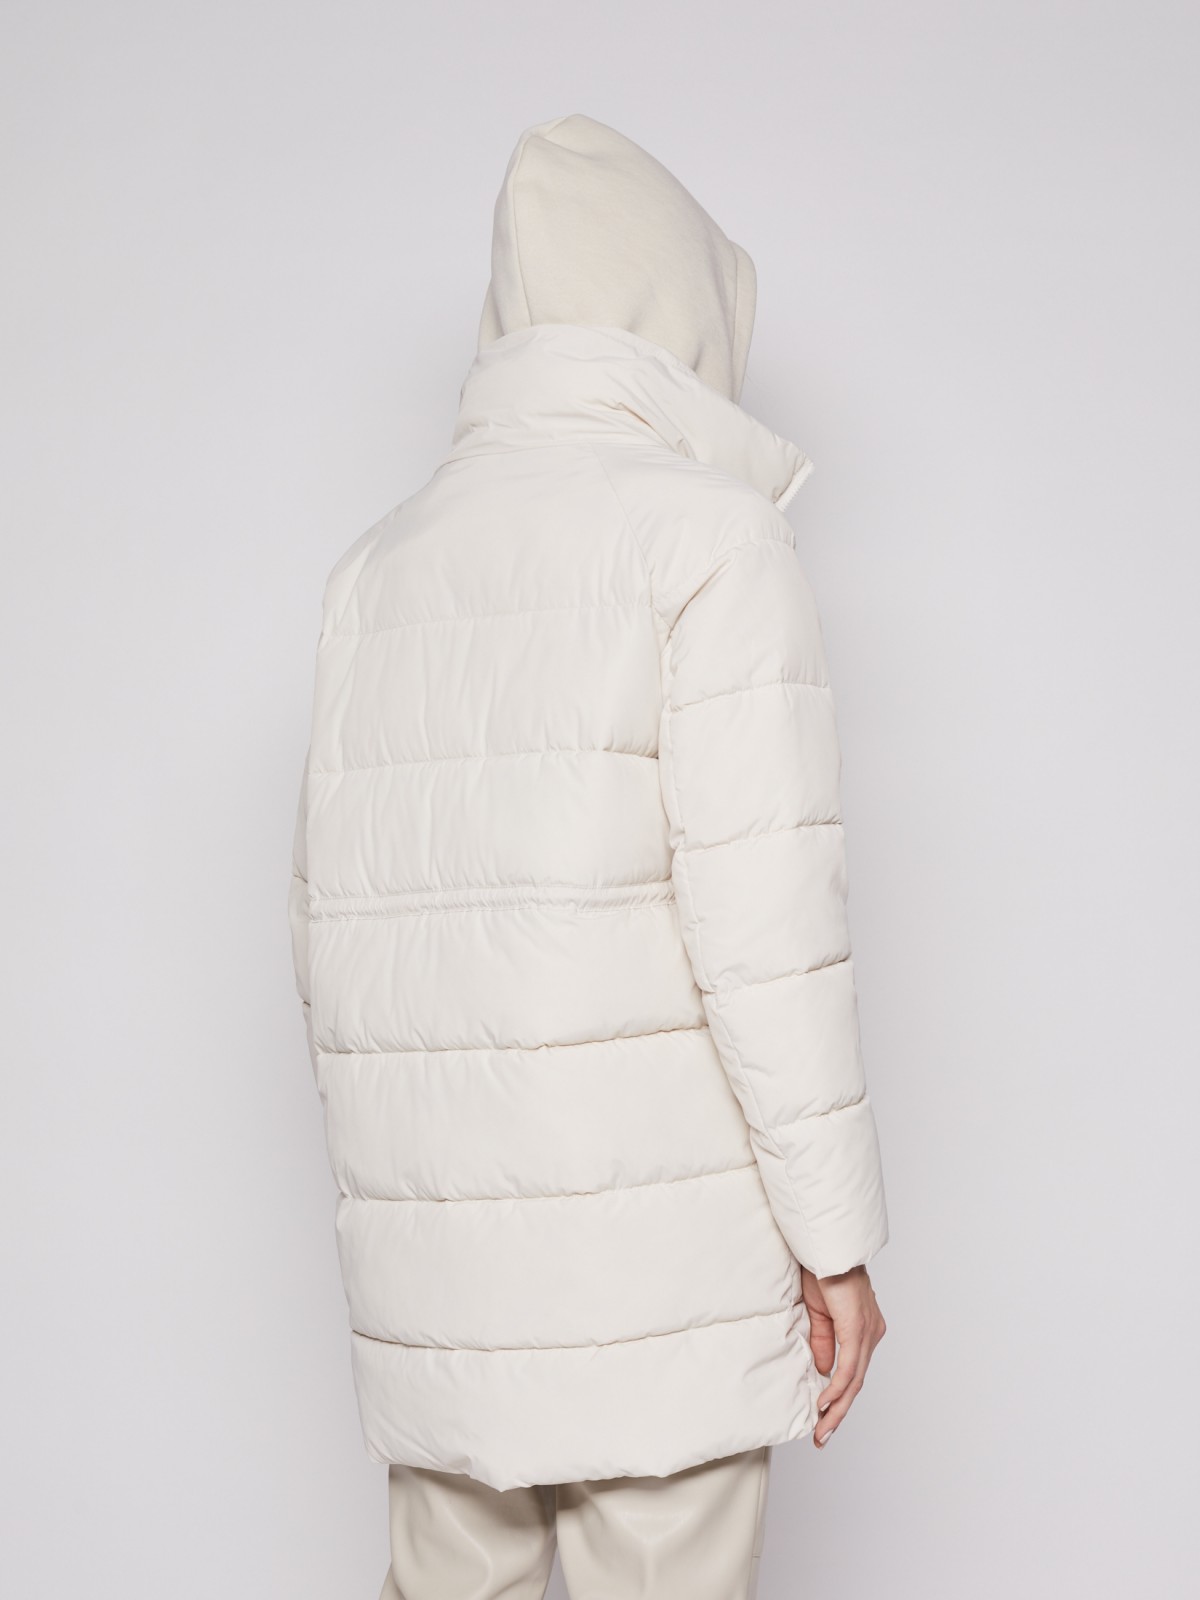 Утеплённое пальто Oversize с капюшоном и манишкой zolla 02212522J044, цвет молоко, размер XS - фото 4